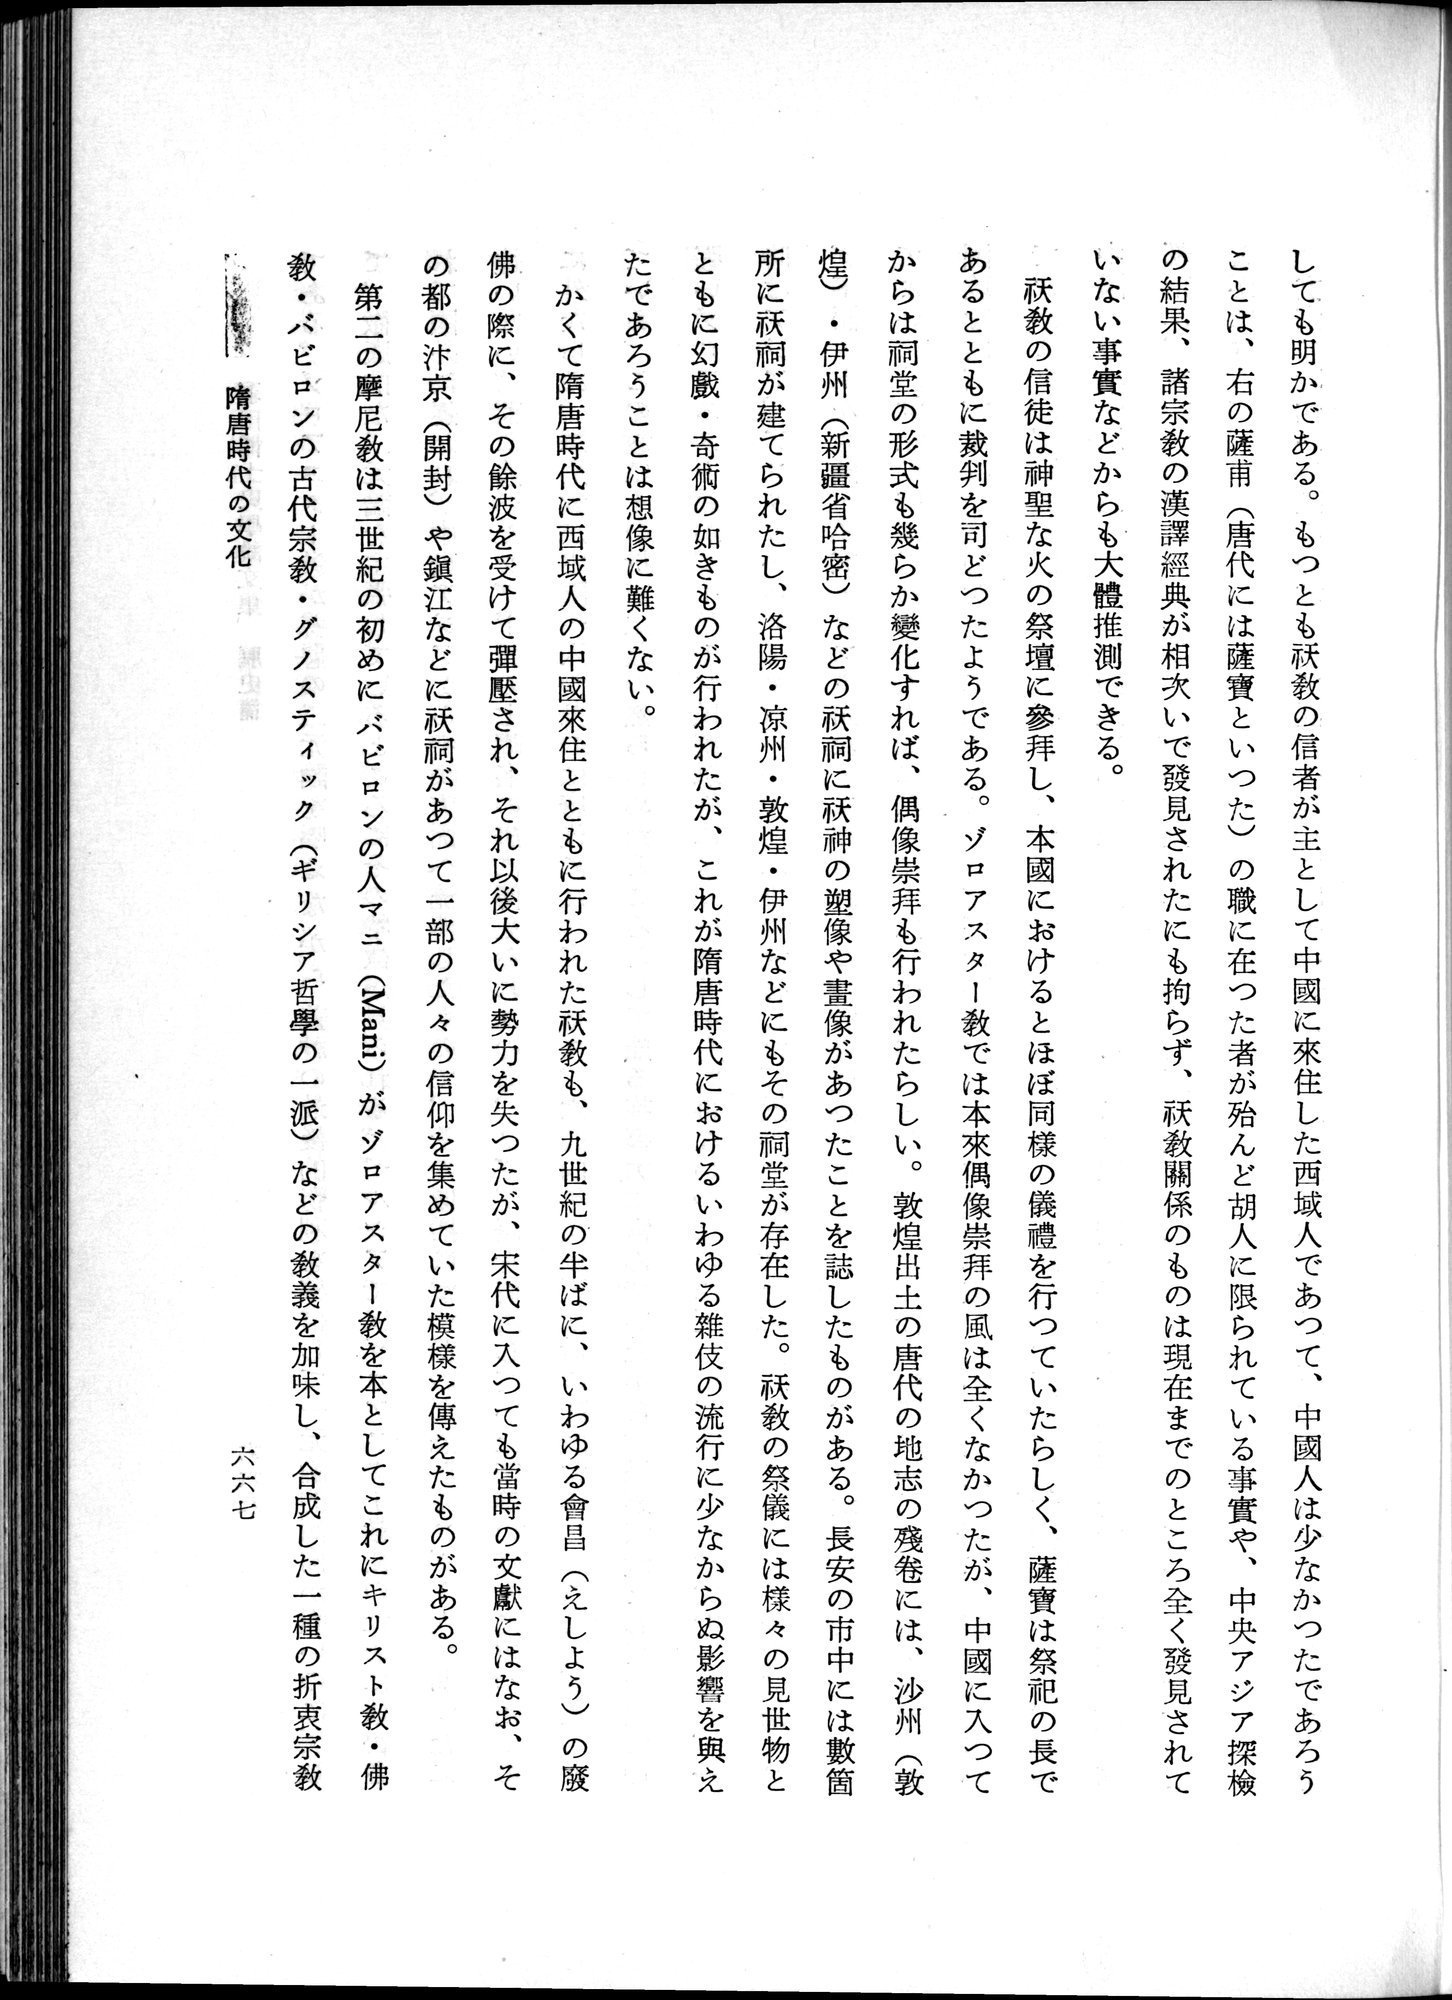 羽田博士史学論文集 : vol.1 / Page 705 (Grayscale High Resolution Image)